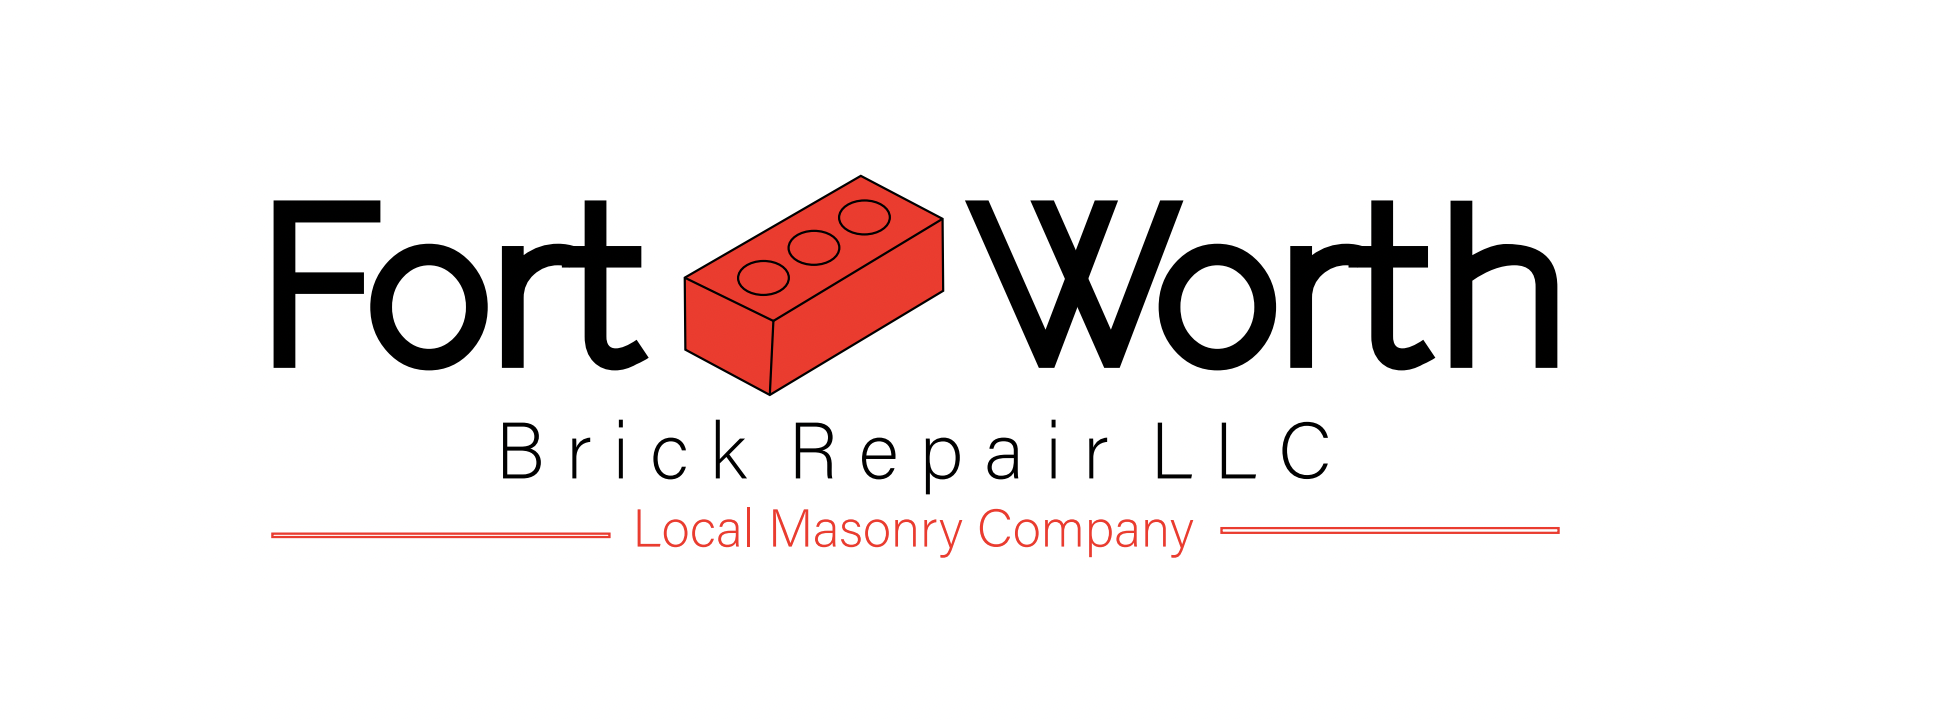 Fort-Worth-Brick-Repair-LLC.png